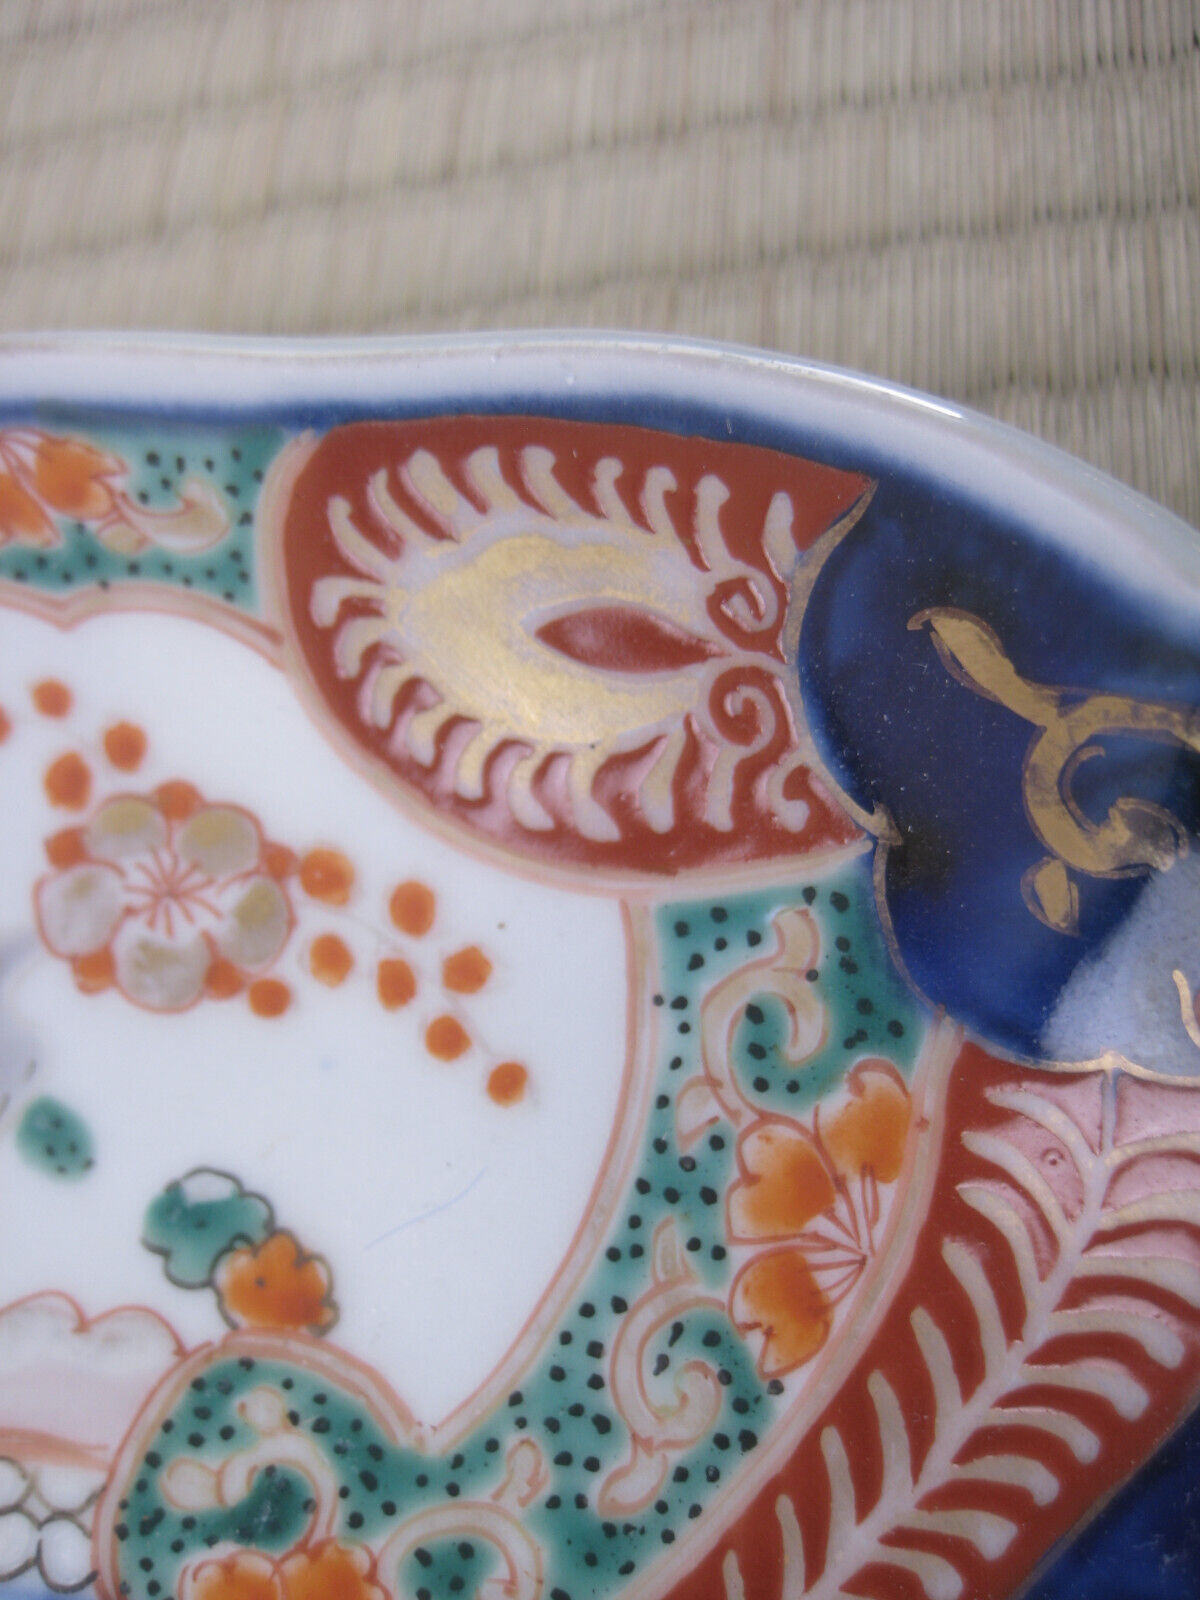 Antique Japanese Meiji Era C1880Akai Imari Ceramic Plate Floral Design 9.5"